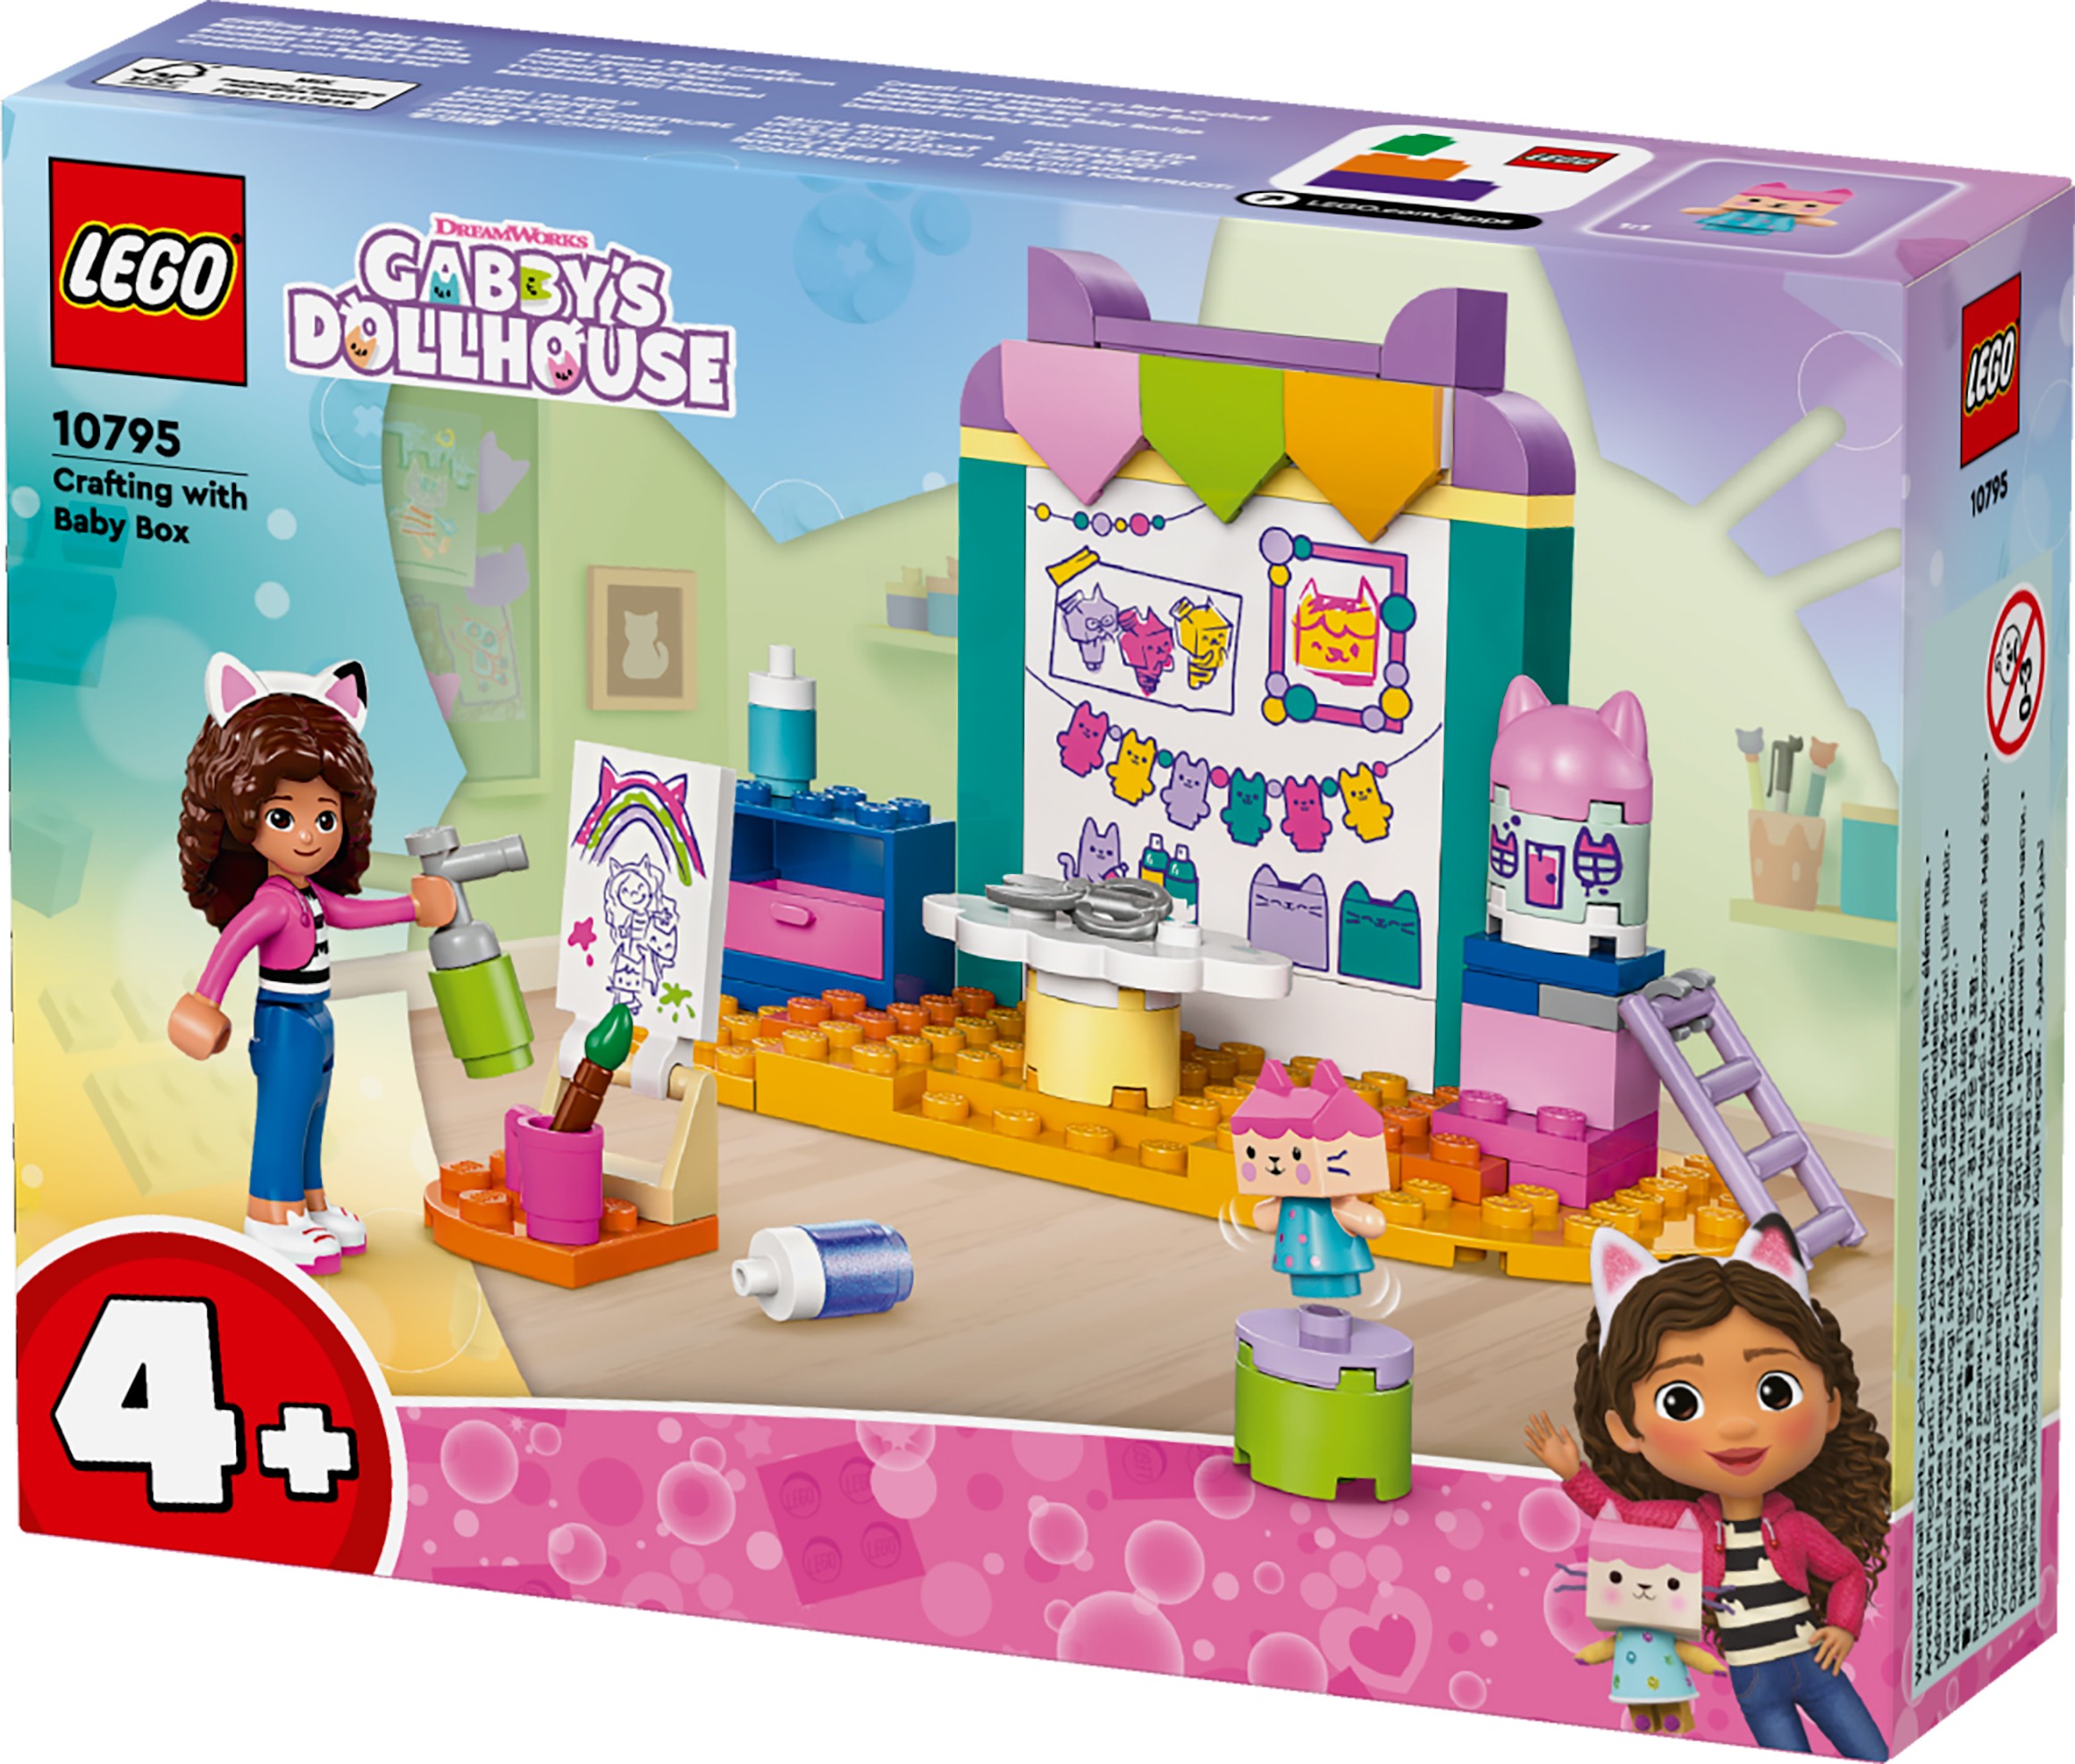 Констуктор LEGO Gabby's Dollhouse Робимо разом з Доцей-Бокс 10795фото2